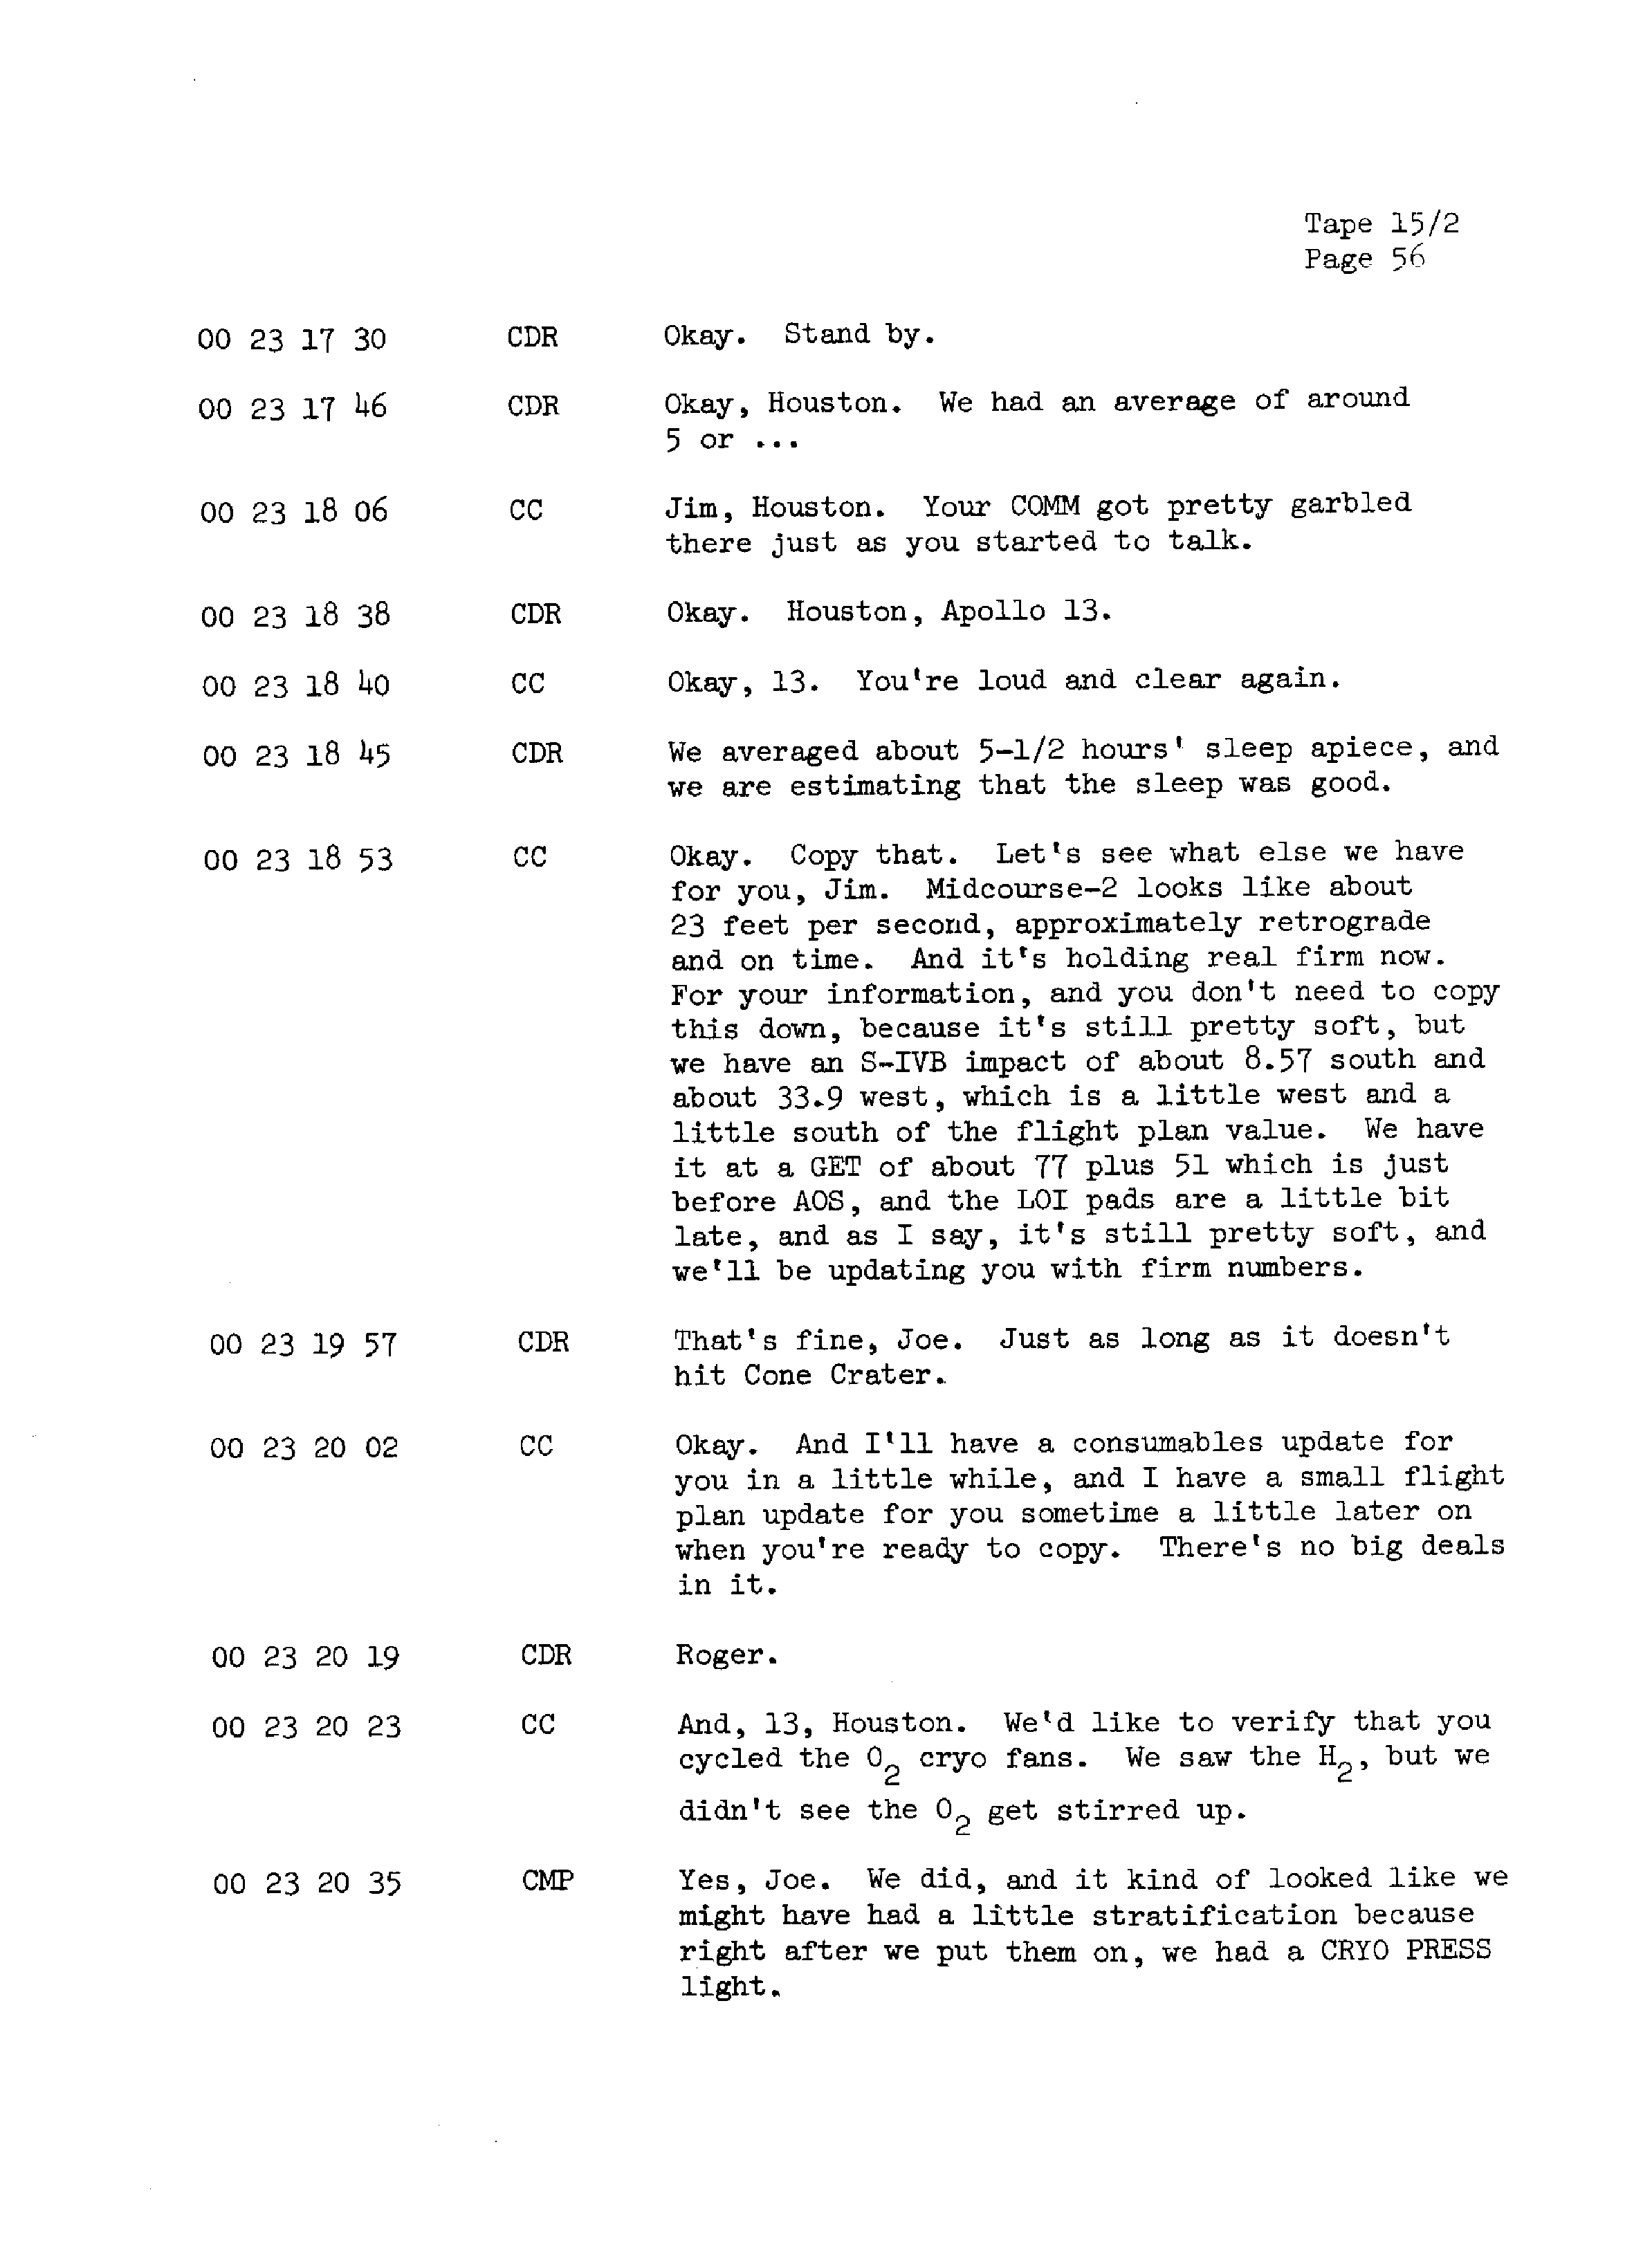 Page 63 of Apollo 13’s original transcript